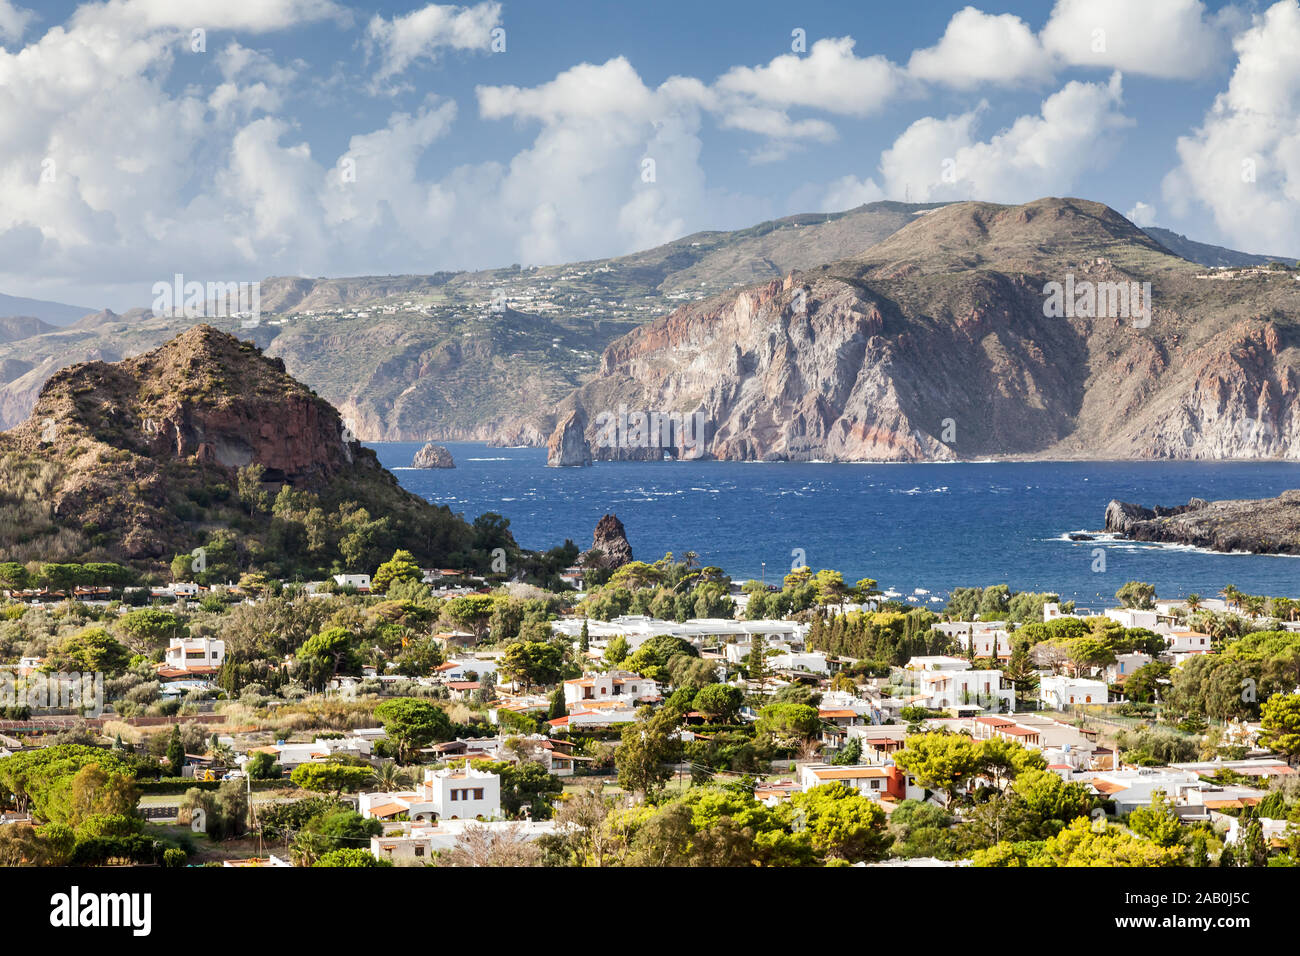 Der Blick auf die schoene Landschaft auf den Liparischen Inseln Stock Photo